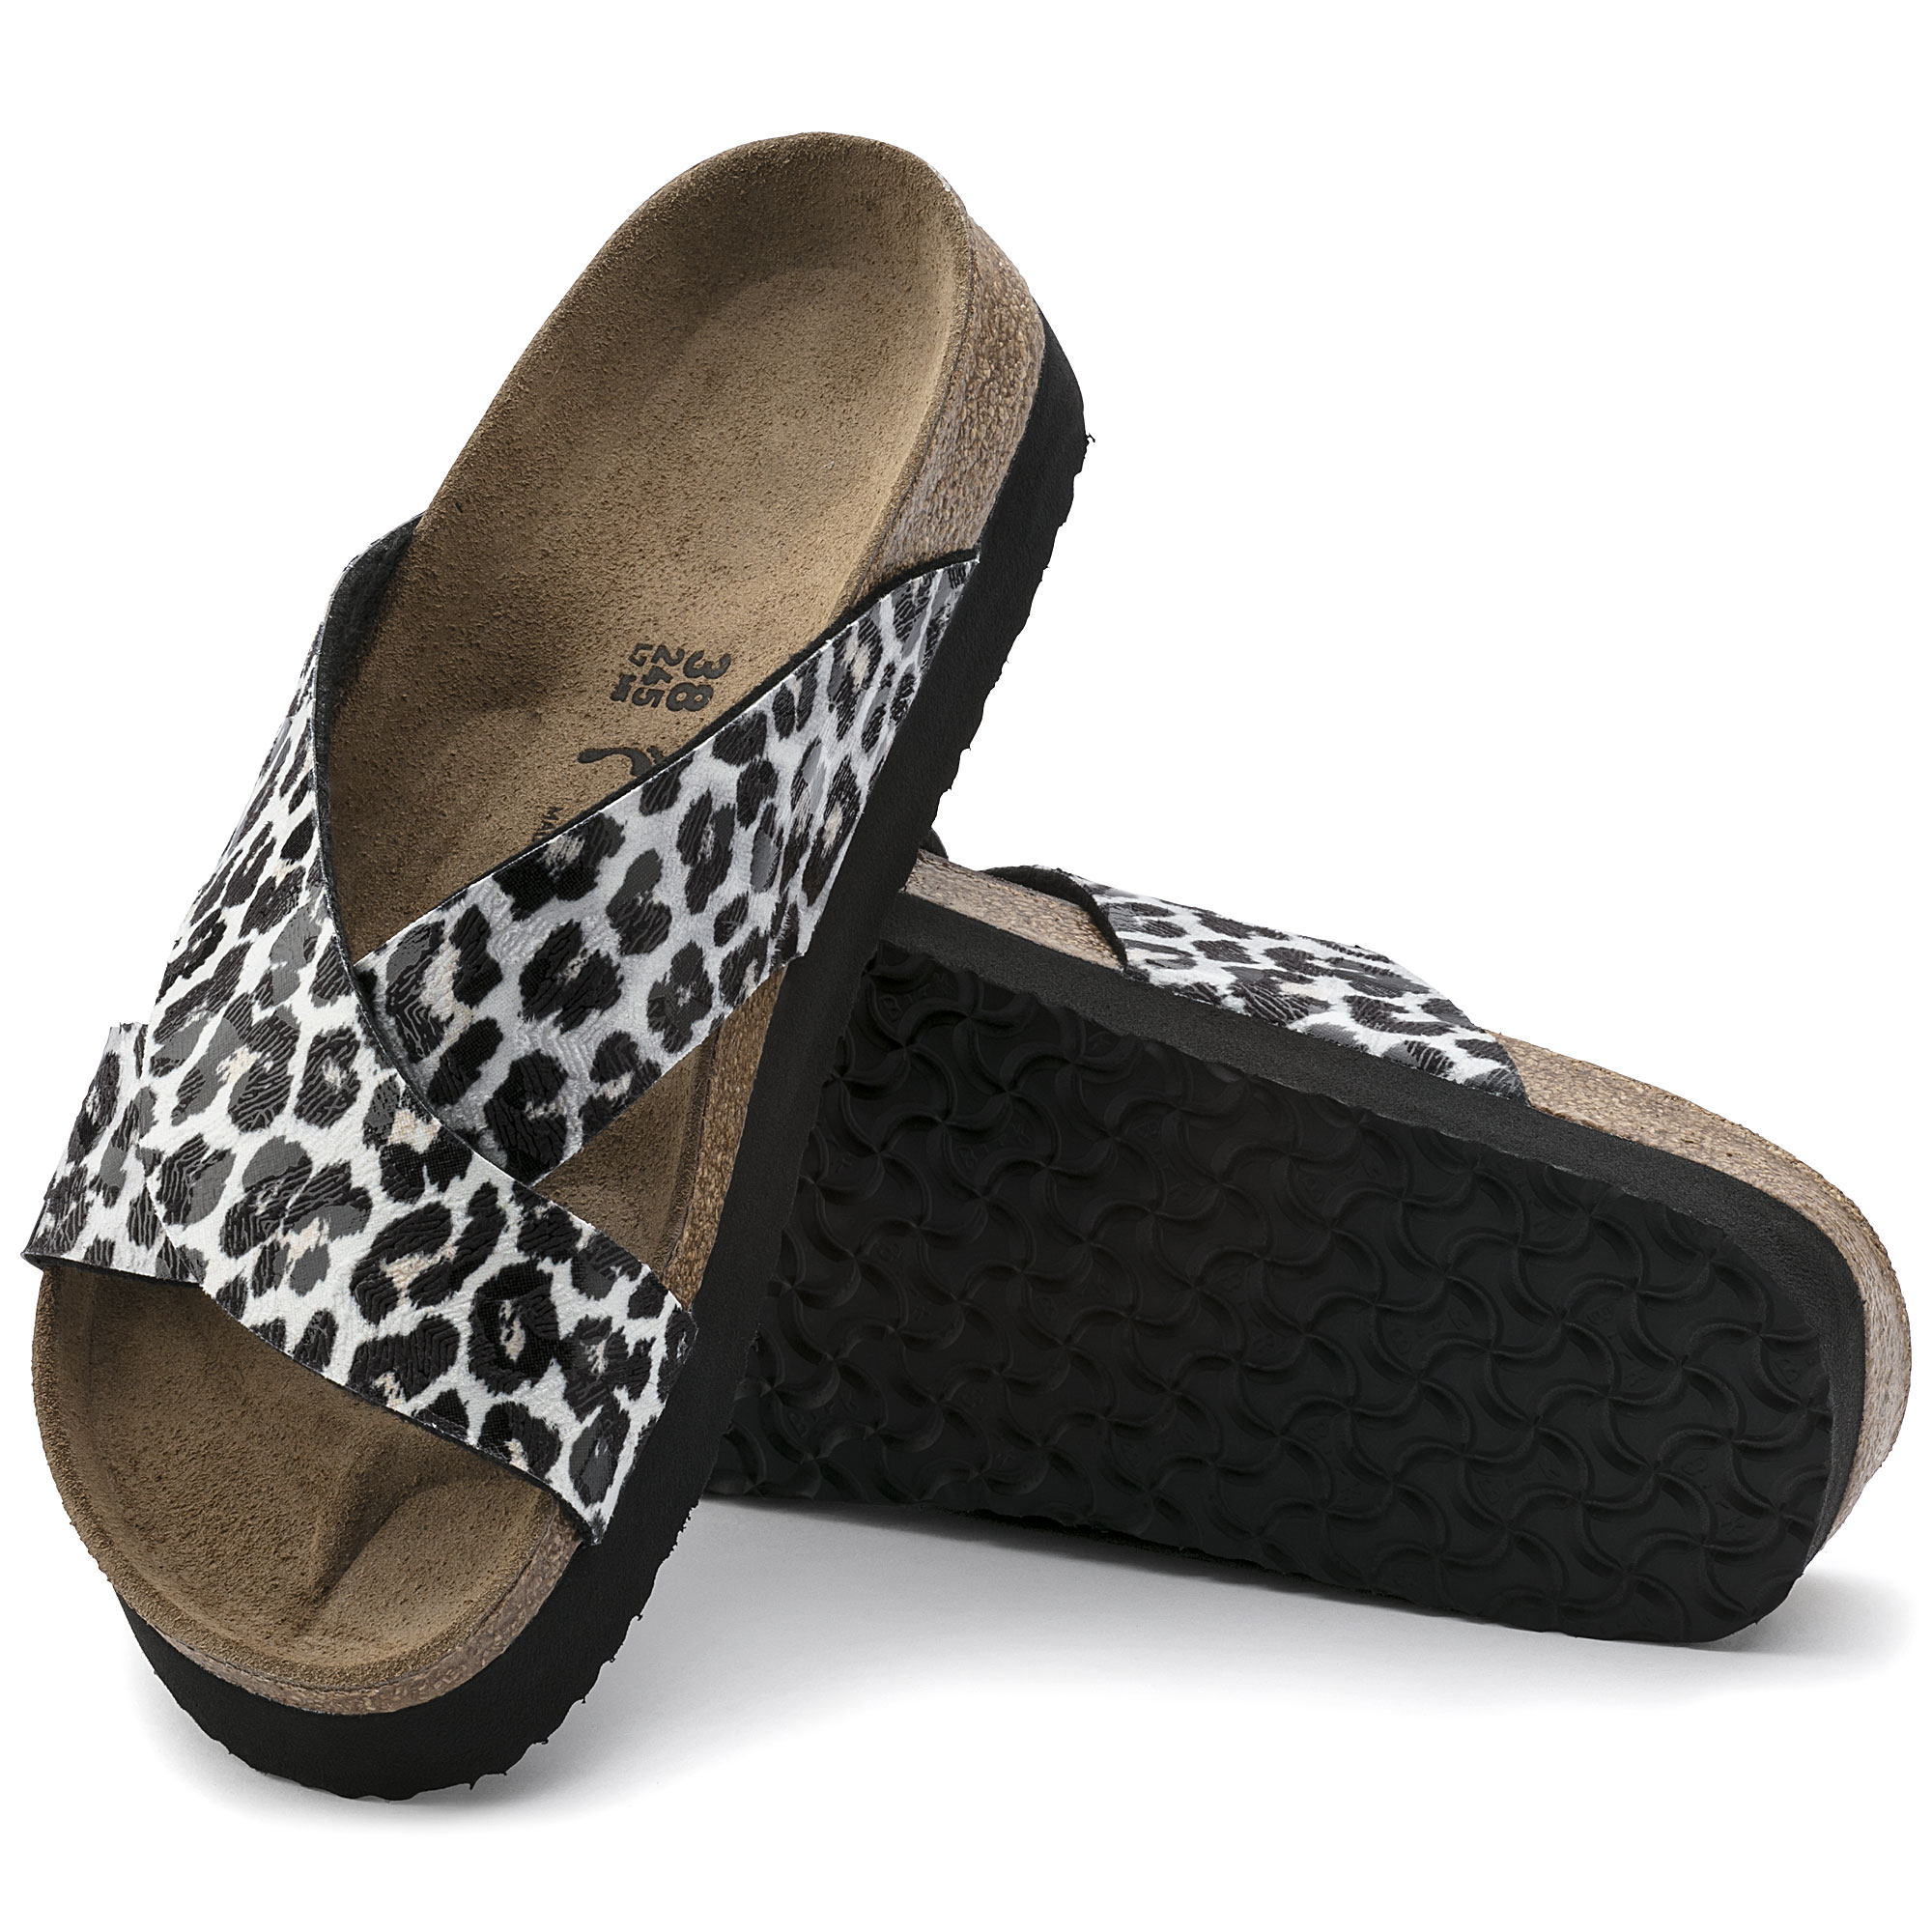 papillio by birkenstock leopard flatform sandals